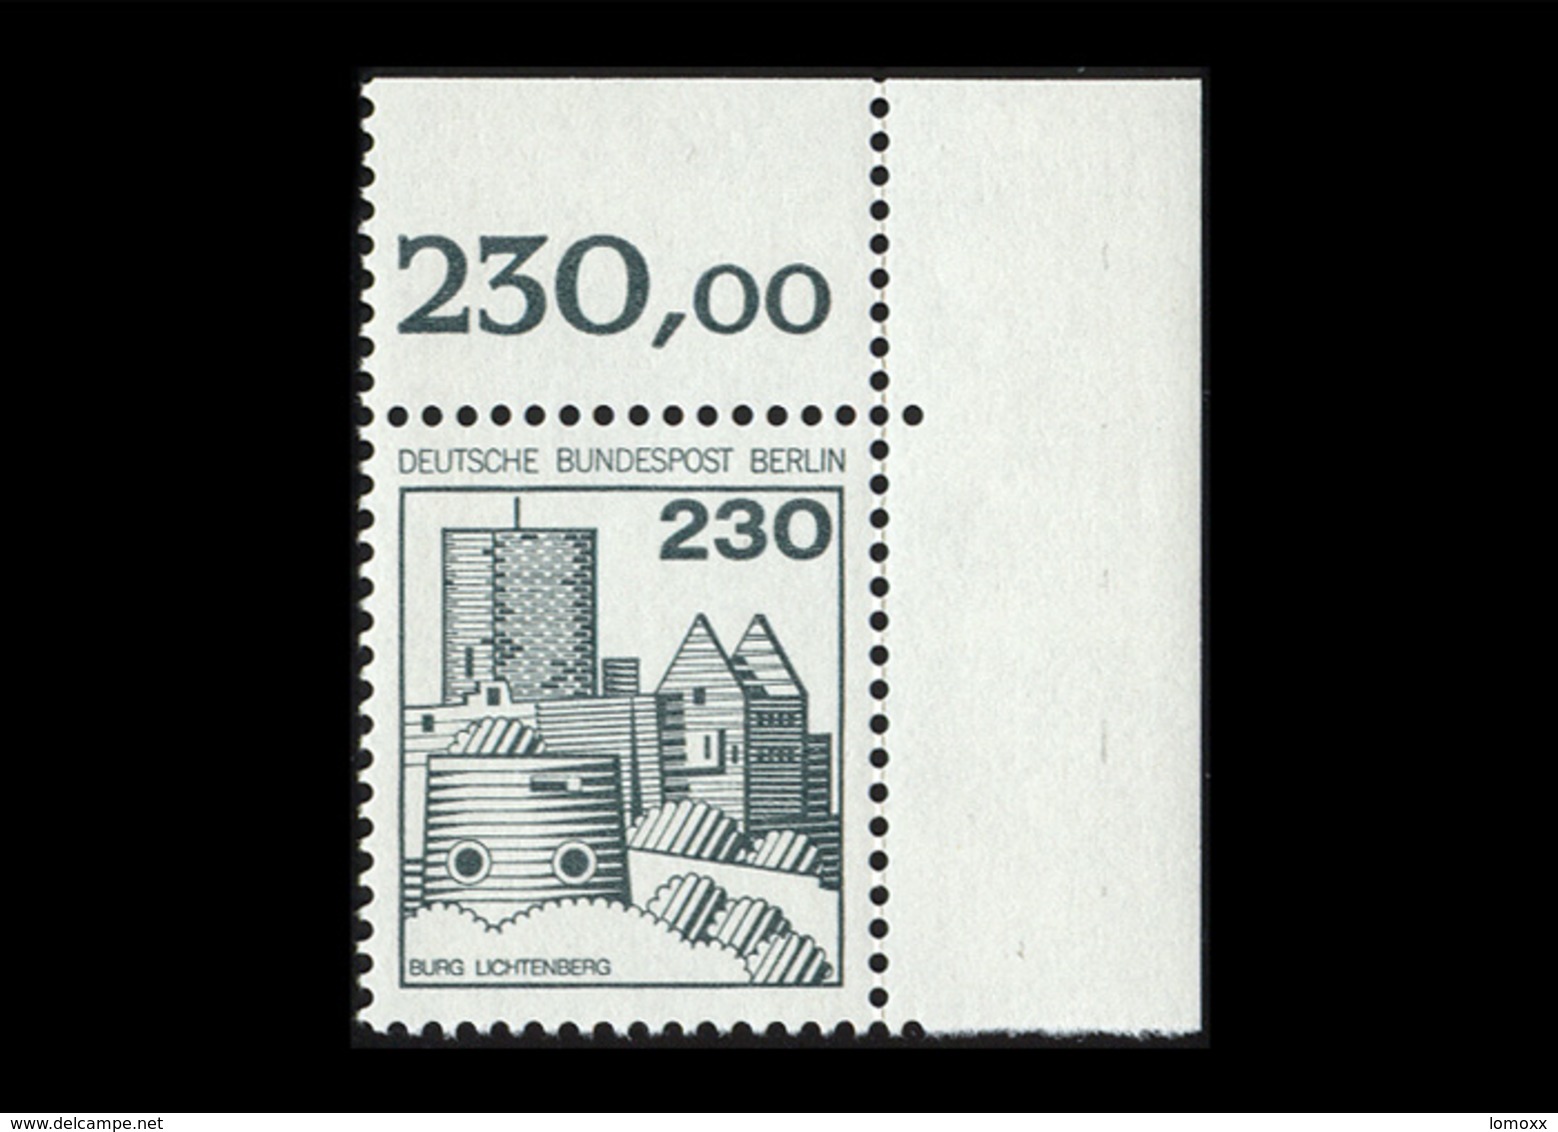 Berlin 1977, Michel-Nr. 590, Freimarken: Burgen Und Schlösser, 230 Pf., Eckrand Oben Rechts, Postfrisch - Ungebraucht